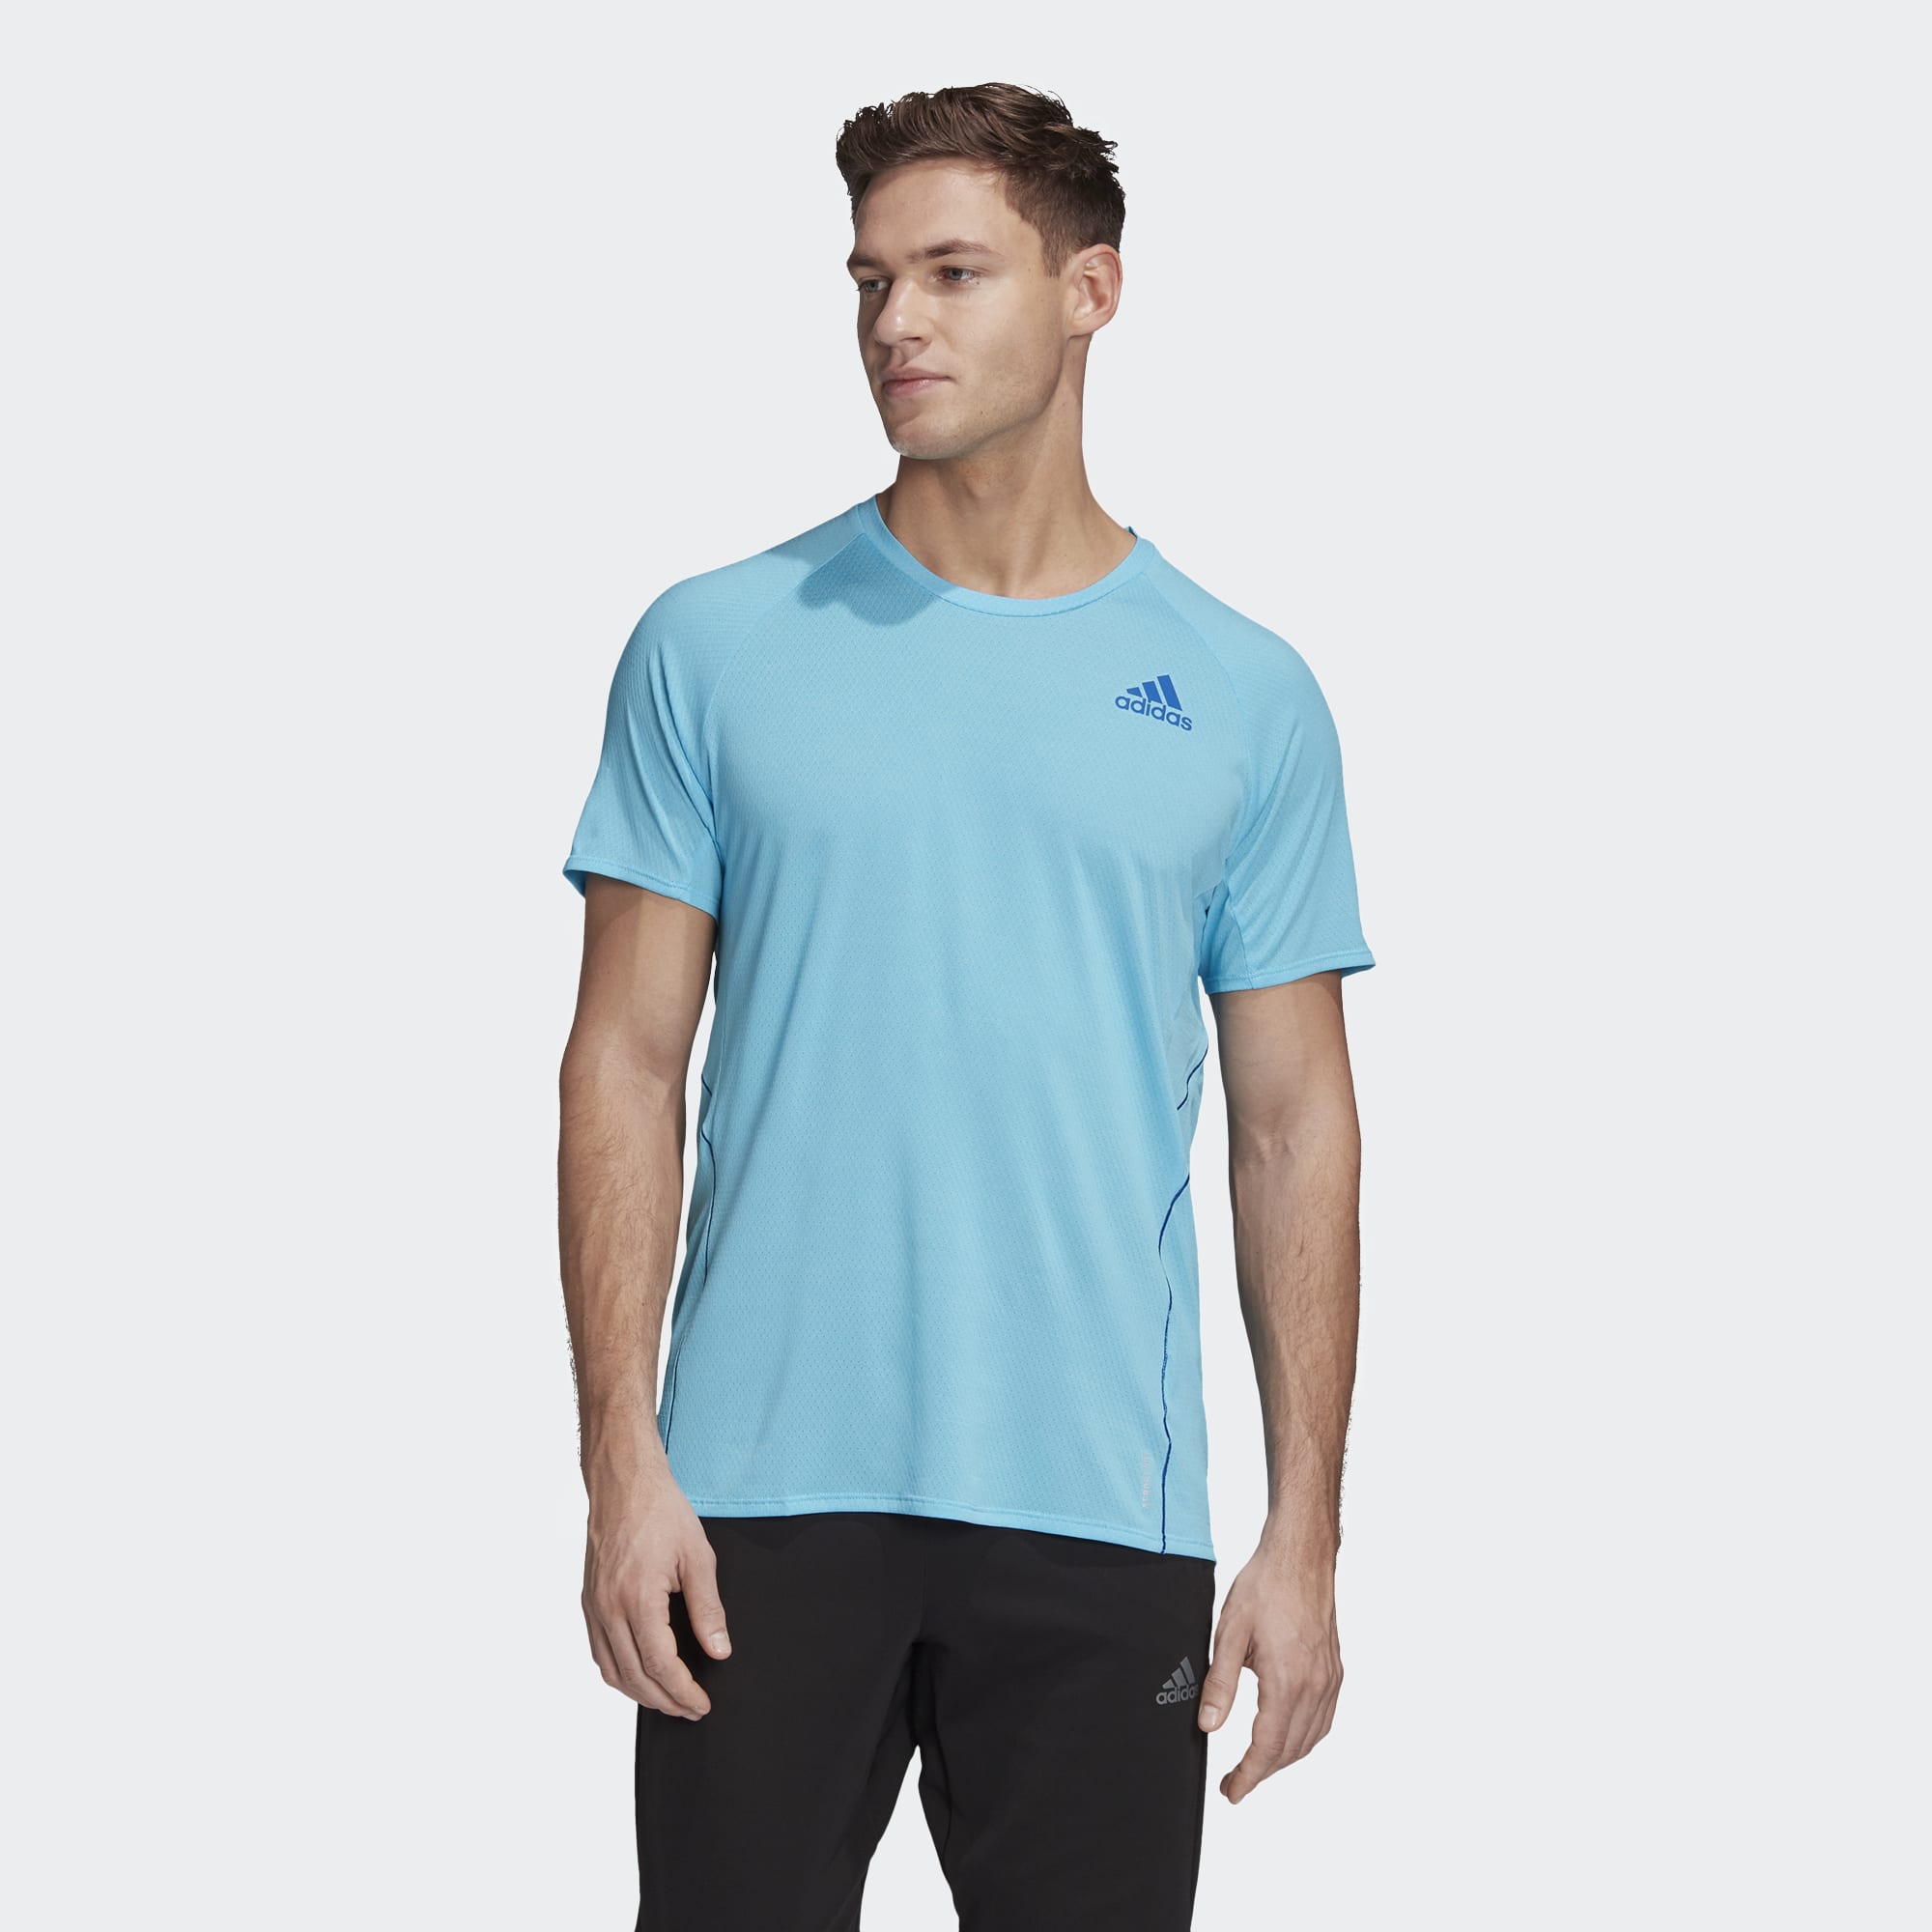 Adidas Runner T-Shirt